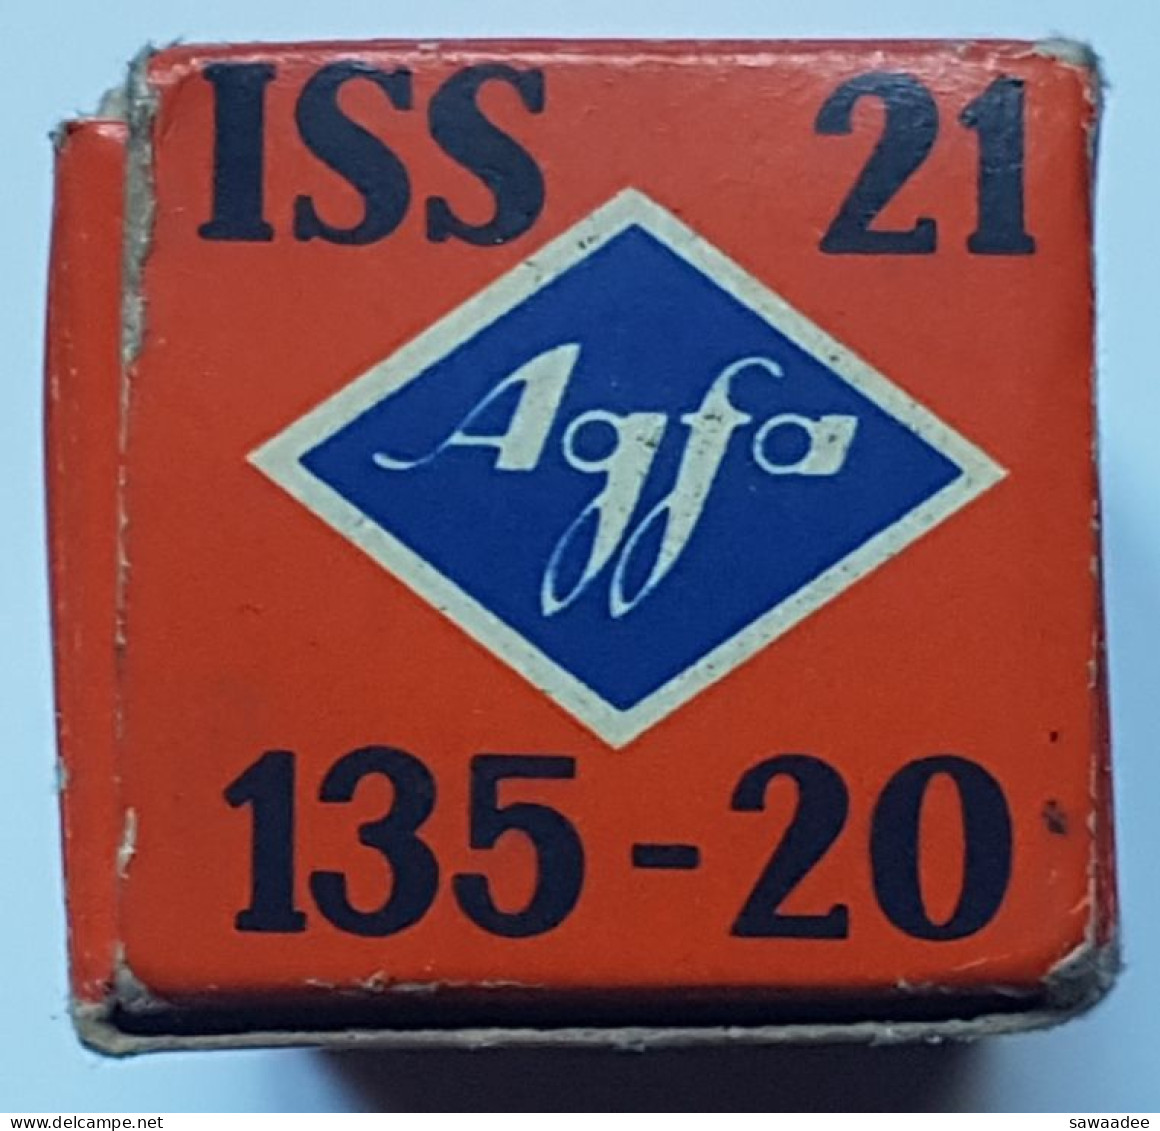 BOITE - PELLICULE PHOTO - PRISE DE VUES - N/B - AGFA - ISOPAN ISS 21 (100 ASA) - 20 VUES - PERIMEE 1961 - VIERGE - Matériel & Accessoires